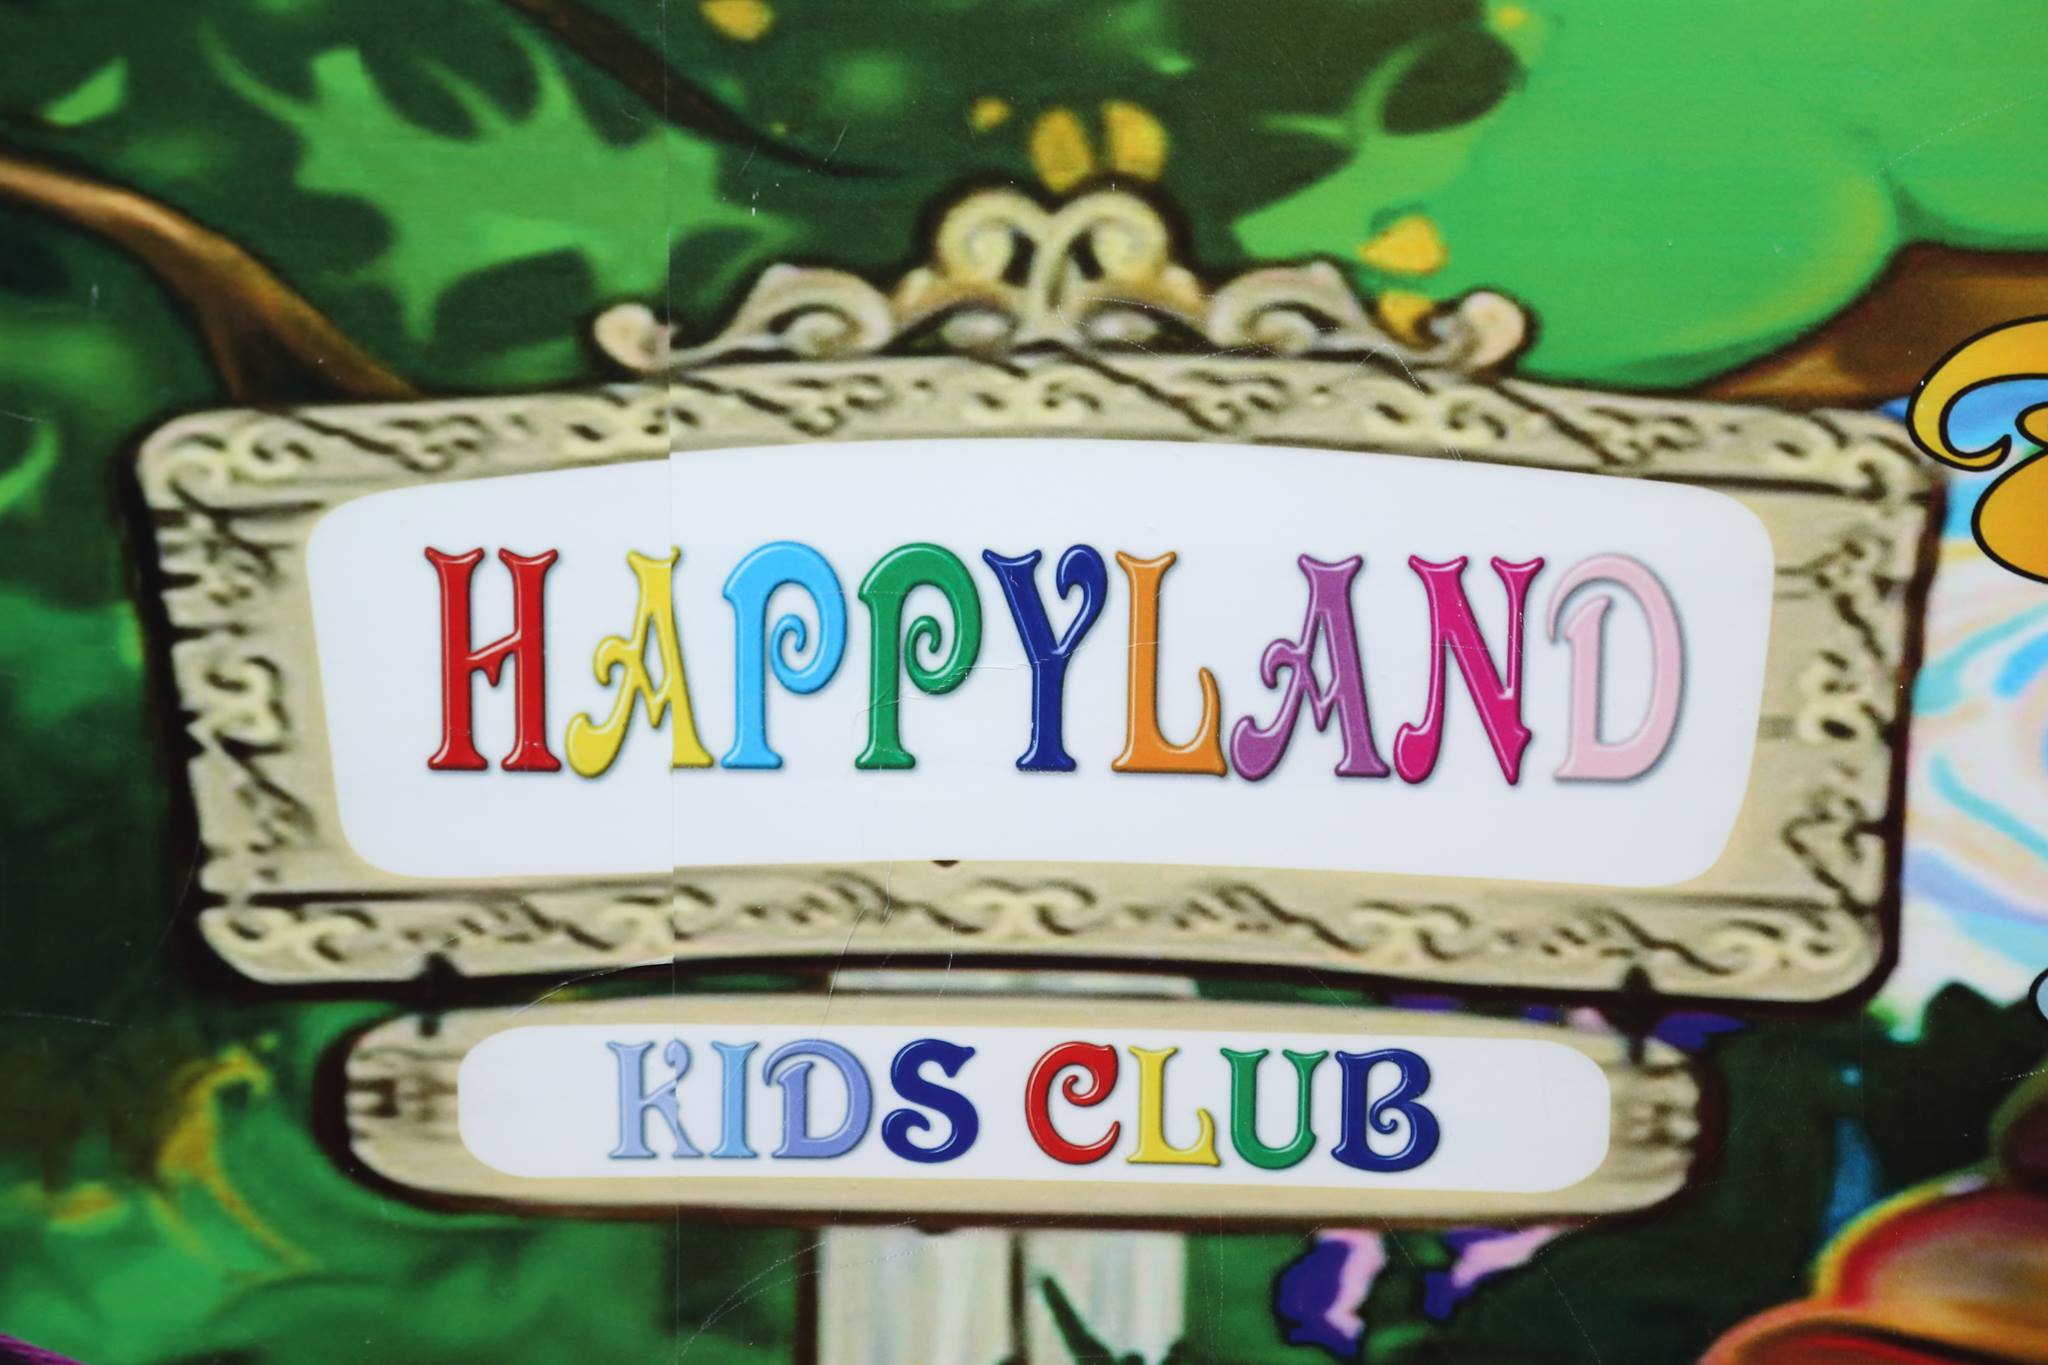 Театральный кружок "Happyland kids club" продолжает набор детей